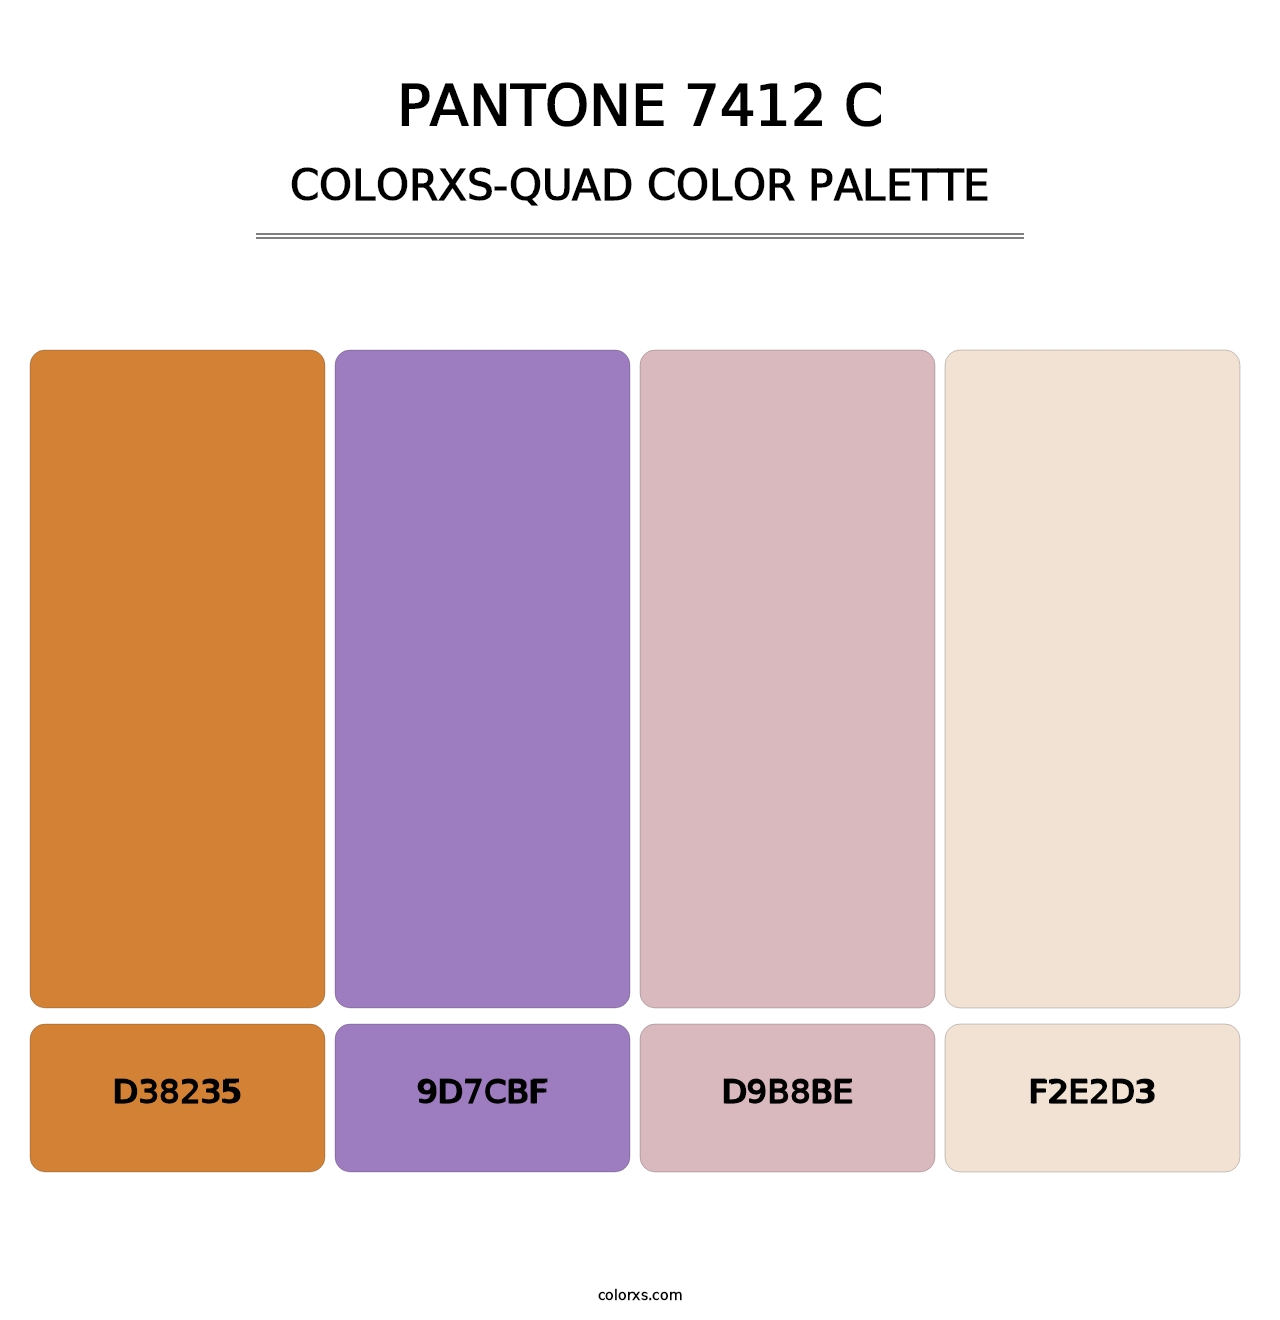 PANTONE 7412 C - Colorxs Quad Palette